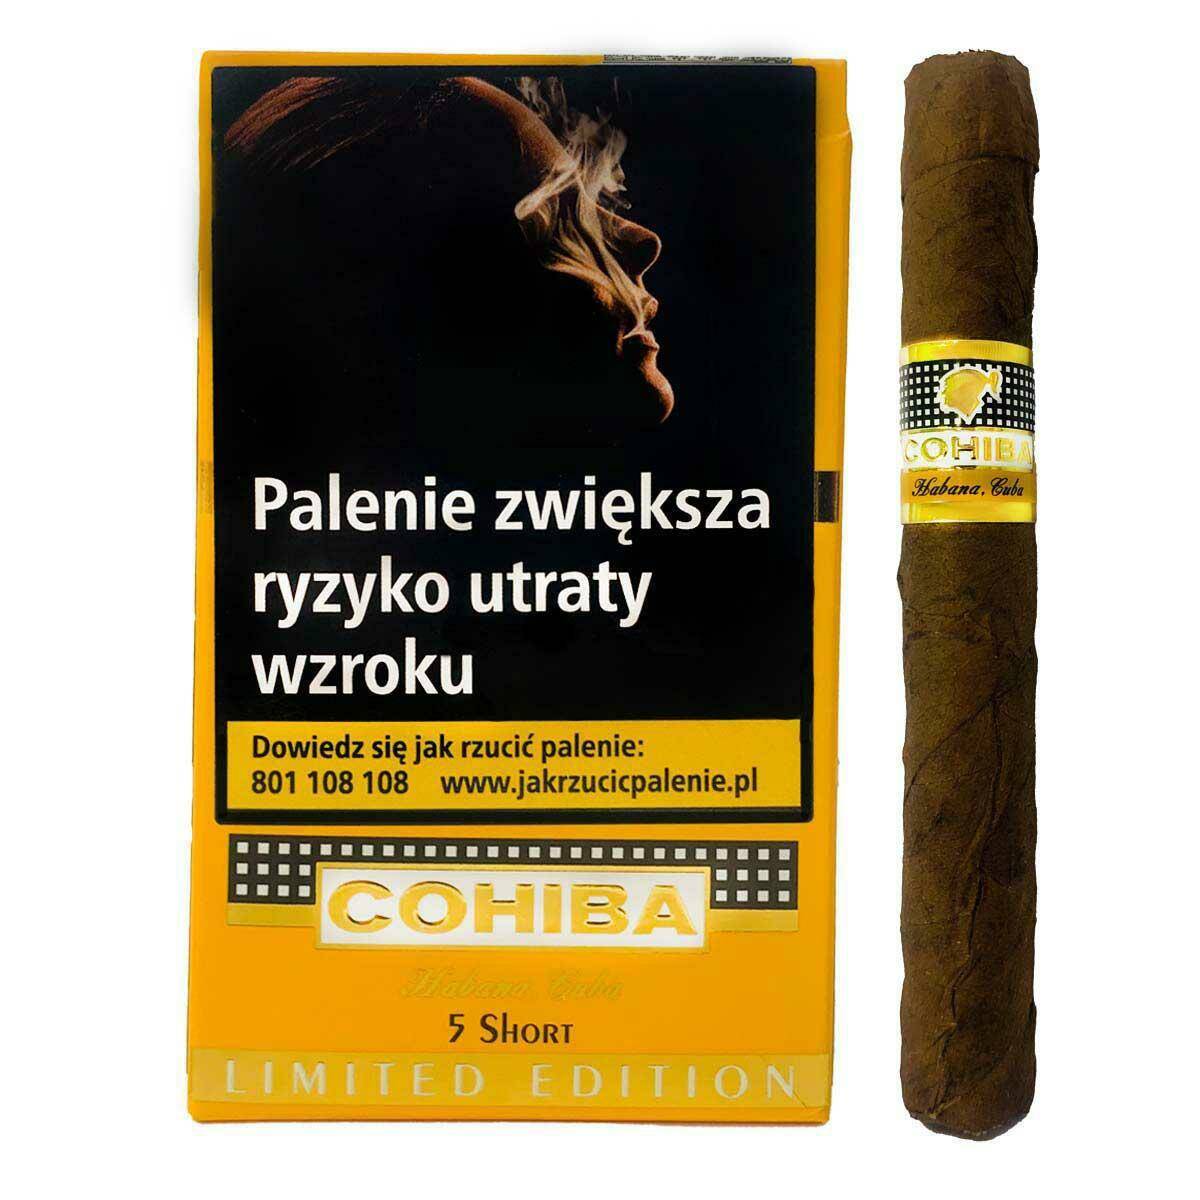 Cigar Cohiba Shorts Limited Edition